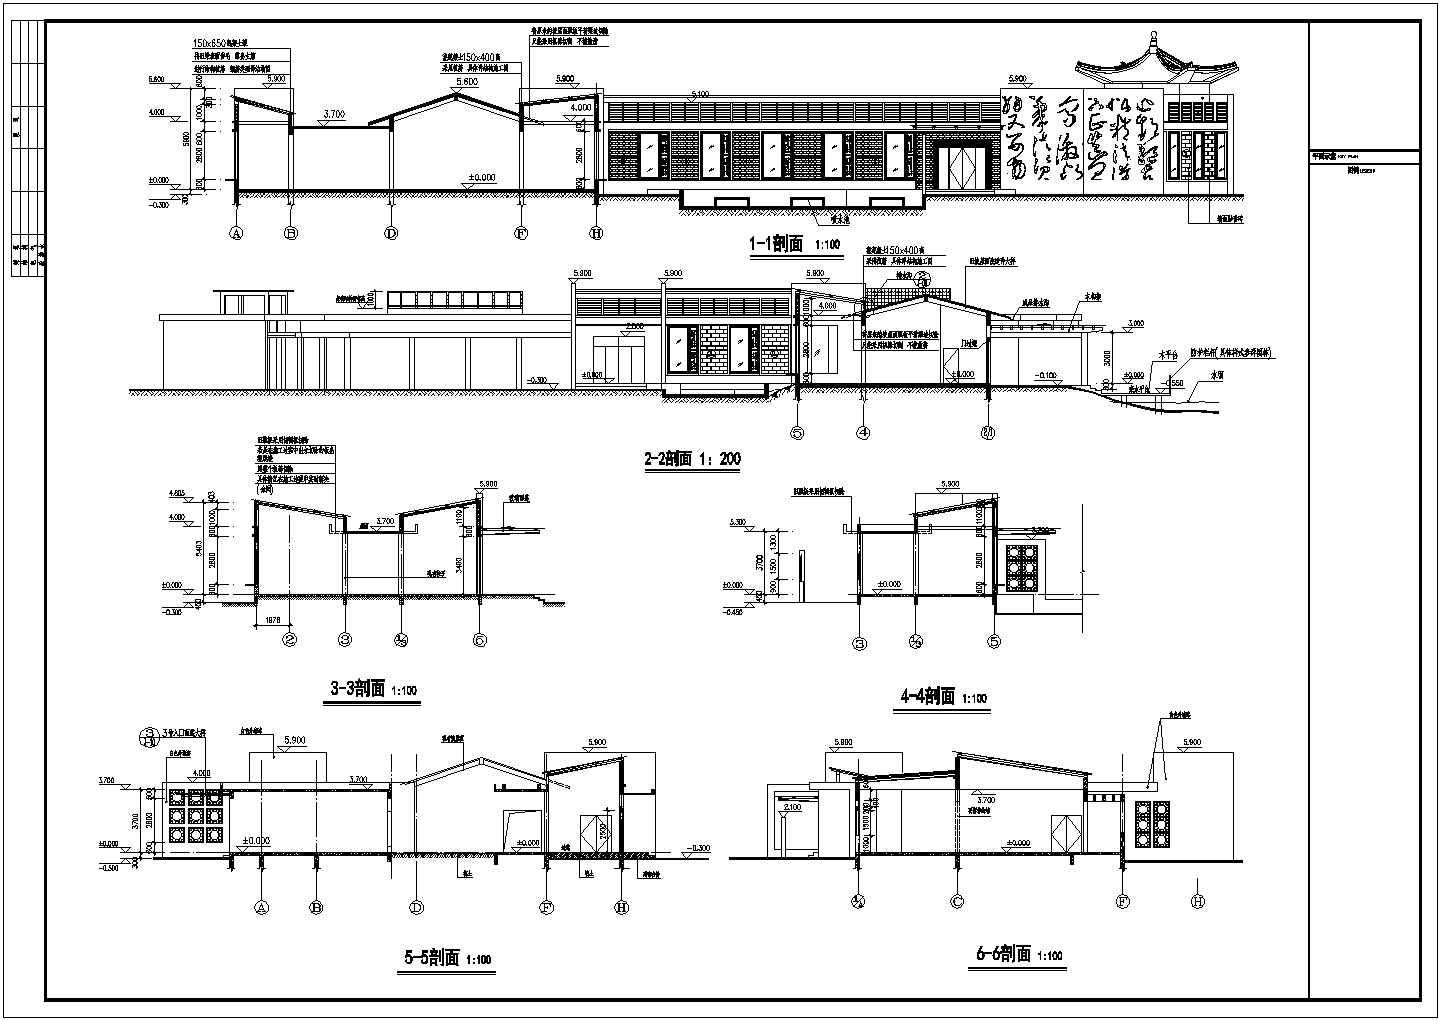 广州某景区内70年代建筑改建成现代展馆建筑施工图